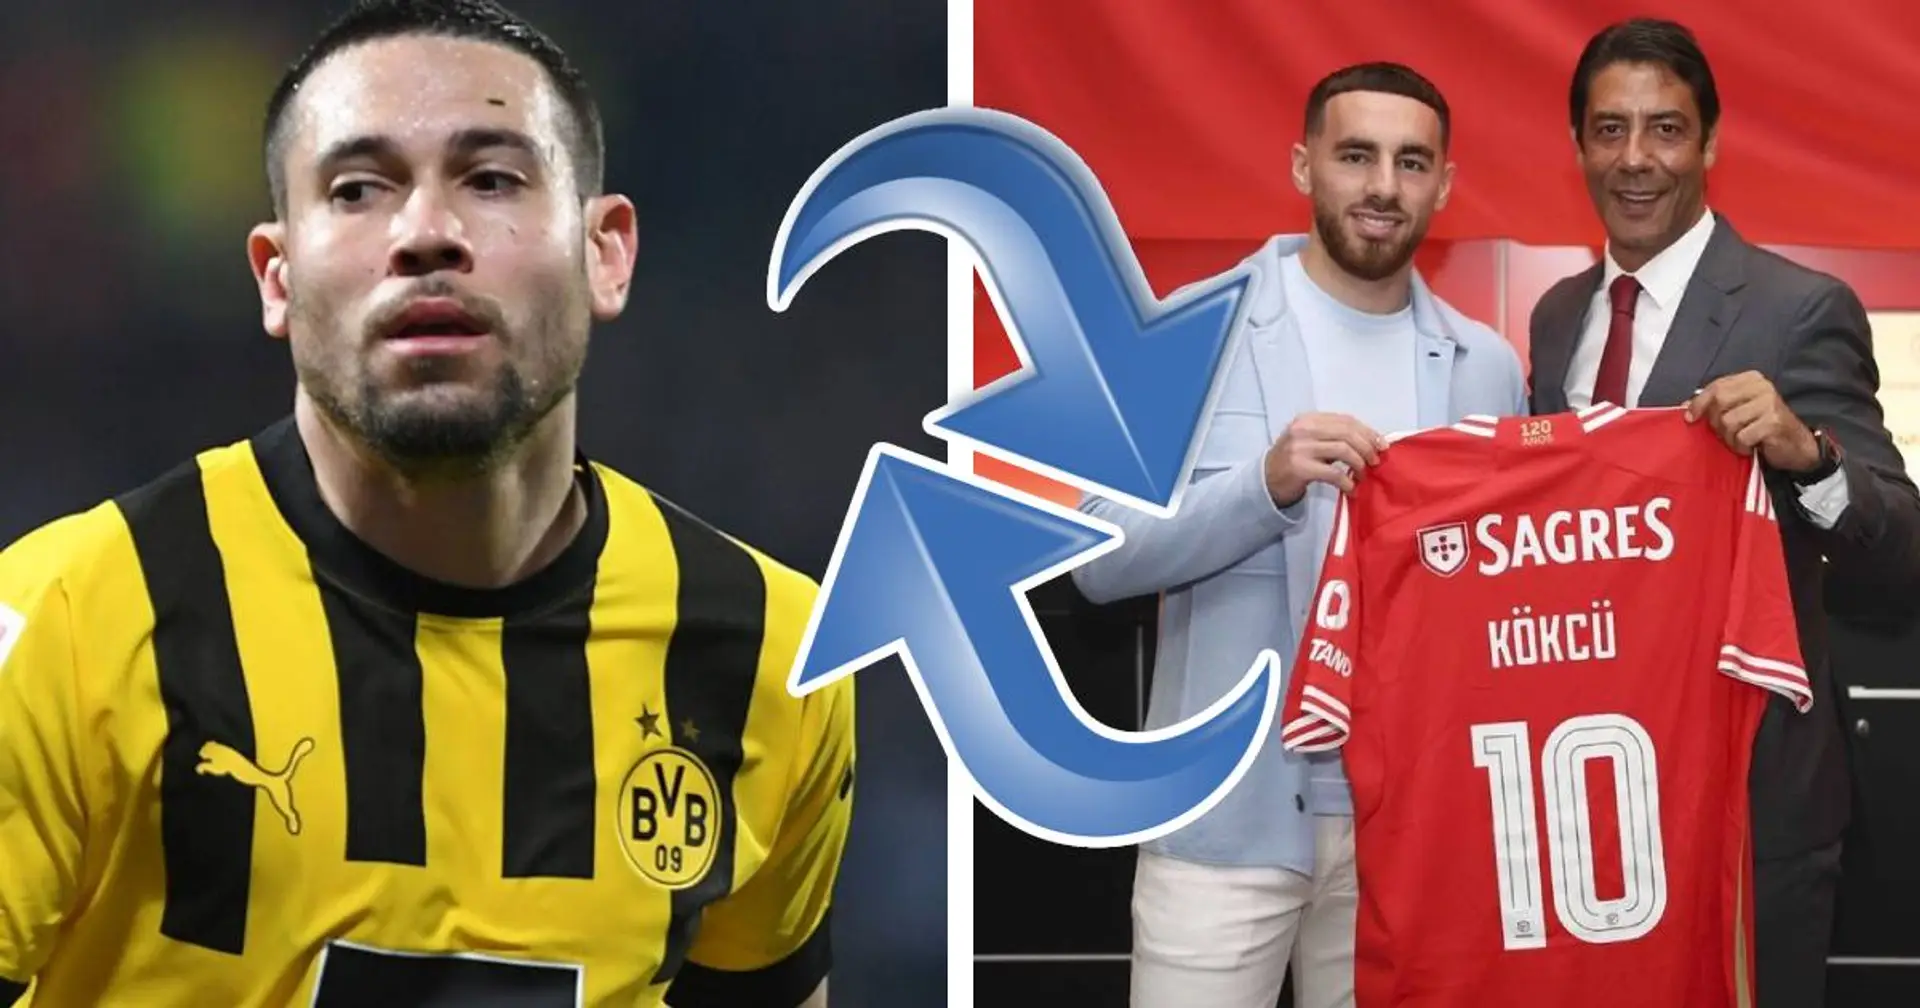 Guerreiro geht zu Bayern, Kökcu unterschreibt bei Benfica: Wichtigste Transfer-News des Tages - beim BVB und weltweit